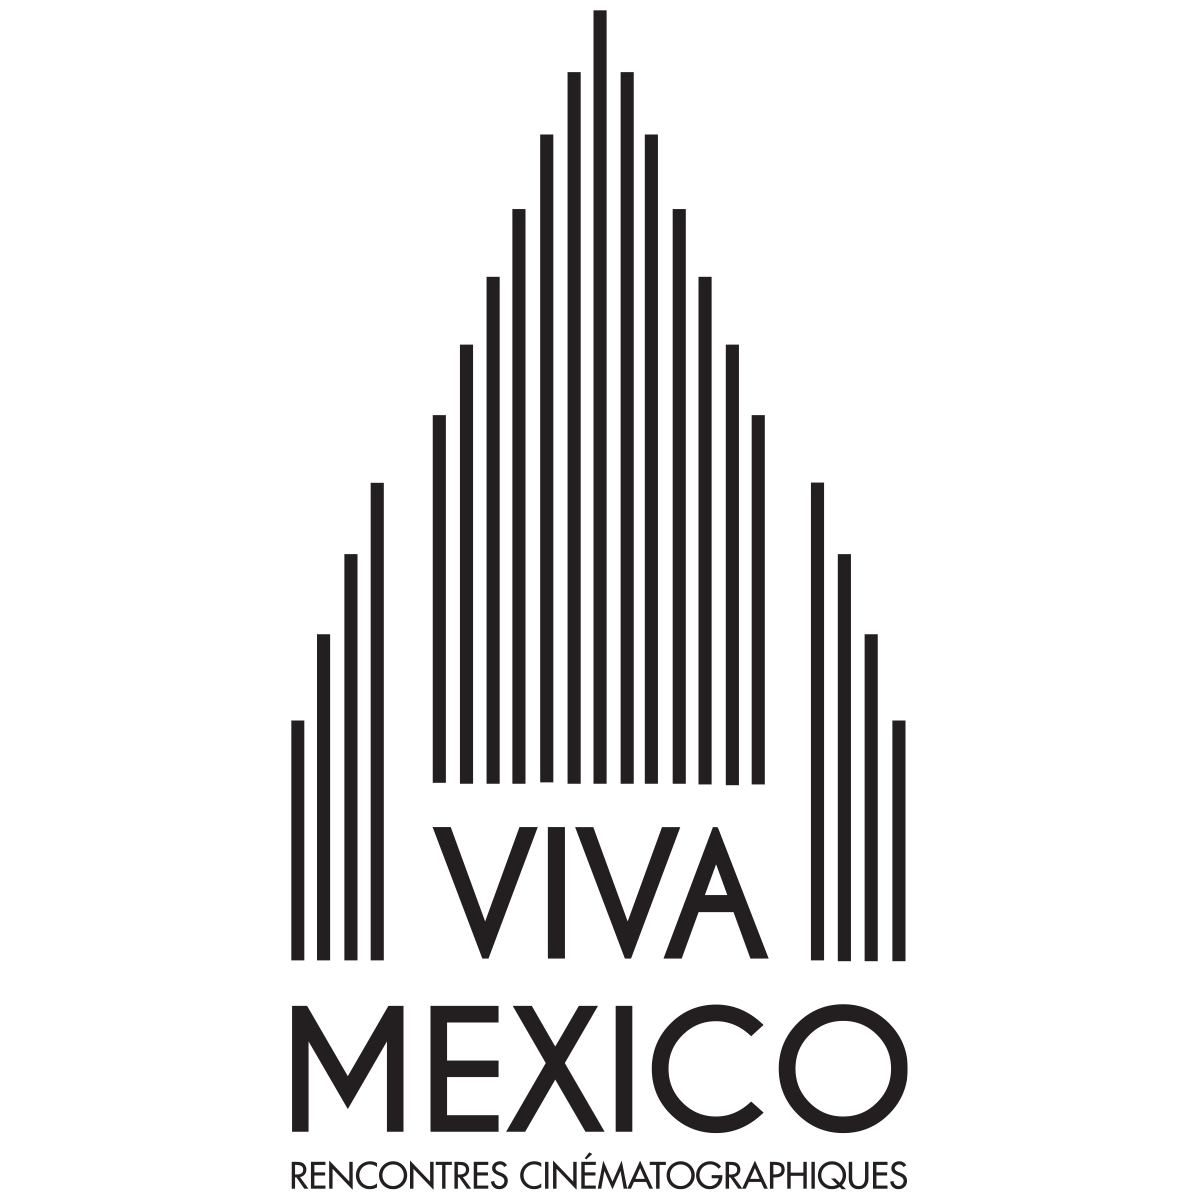 Viva Mexico - Recontres cinématographiques